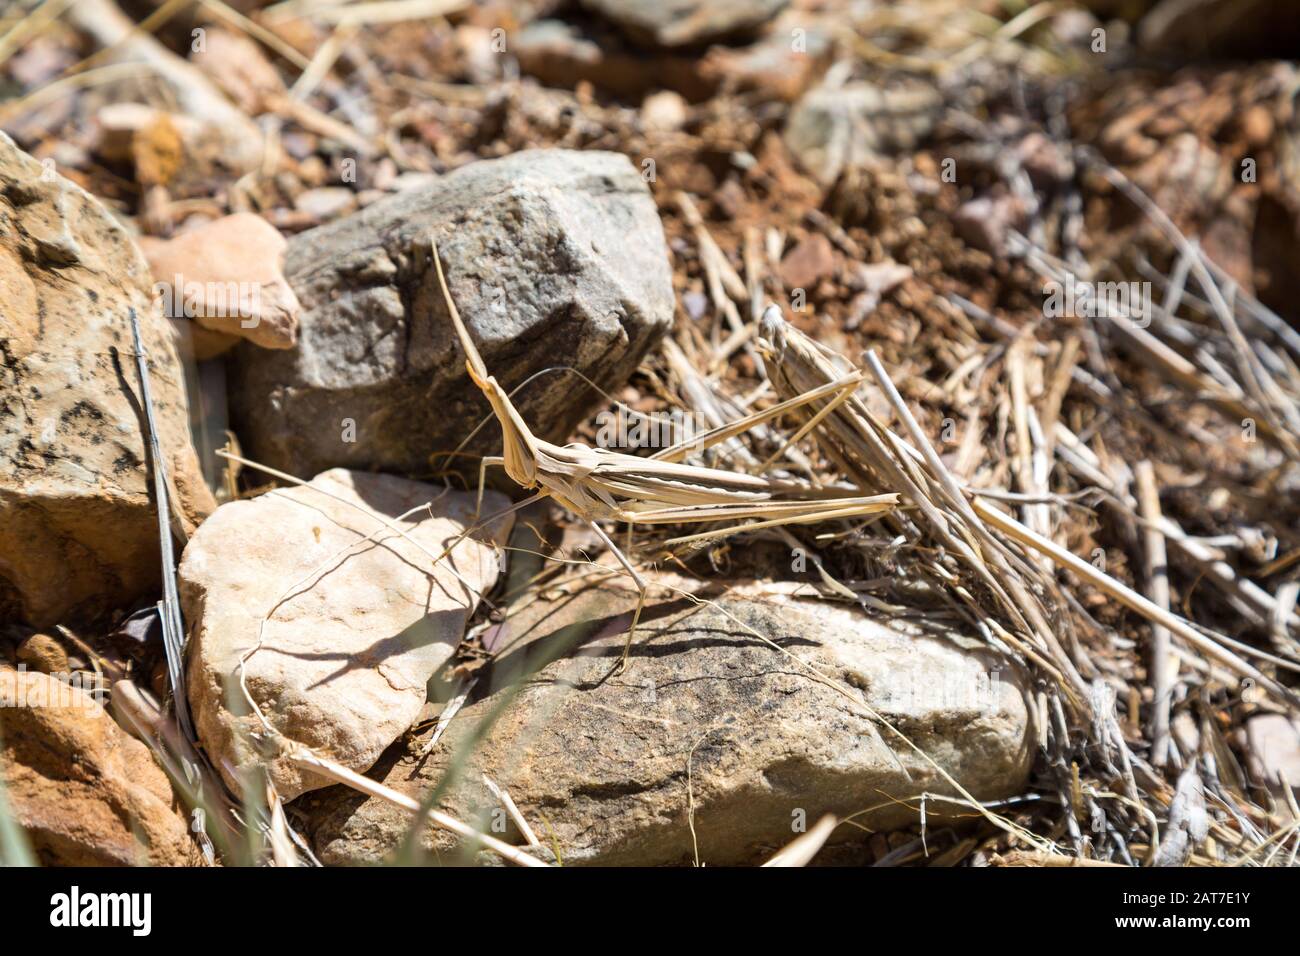 Sauterelle à tête conique brune bien camouflée (Acrida ungarica) sur une pierre, entourée d'herbe sèche, Namibie, Afrique Banque D'Images